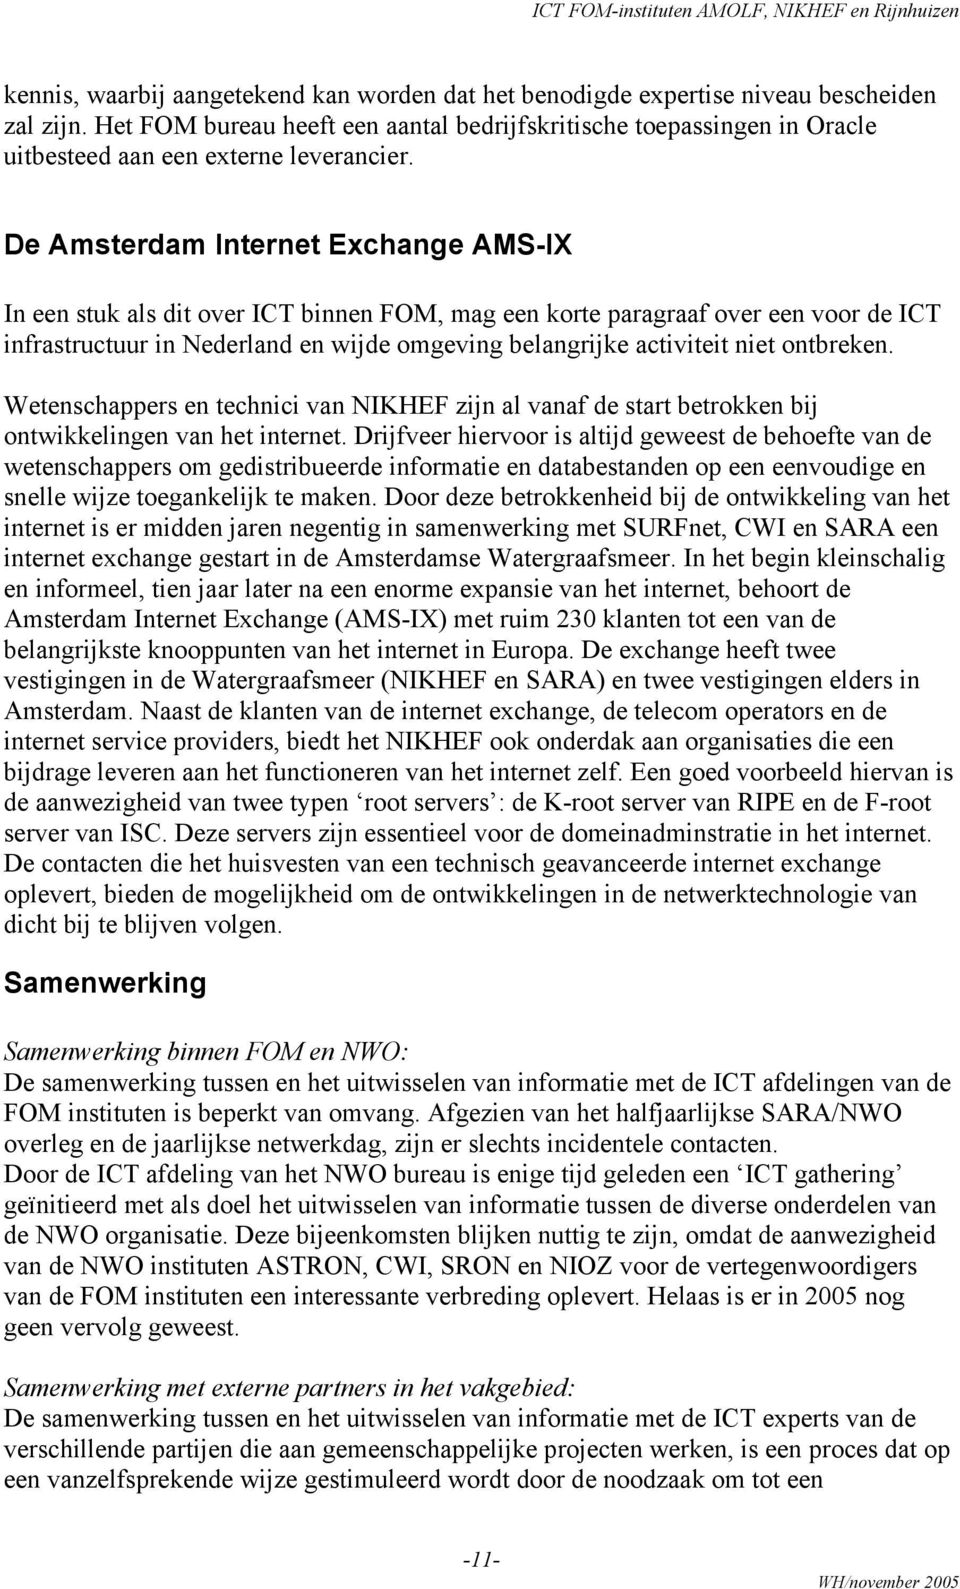 De Amsterdam Internet Exchange AMS-IX In een stuk als dit over ICT binnen FOM, mag een korte paragraaf over een voor de ICT infrastructuur in Nederland en wijde omgeving belangrijke activiteit niet